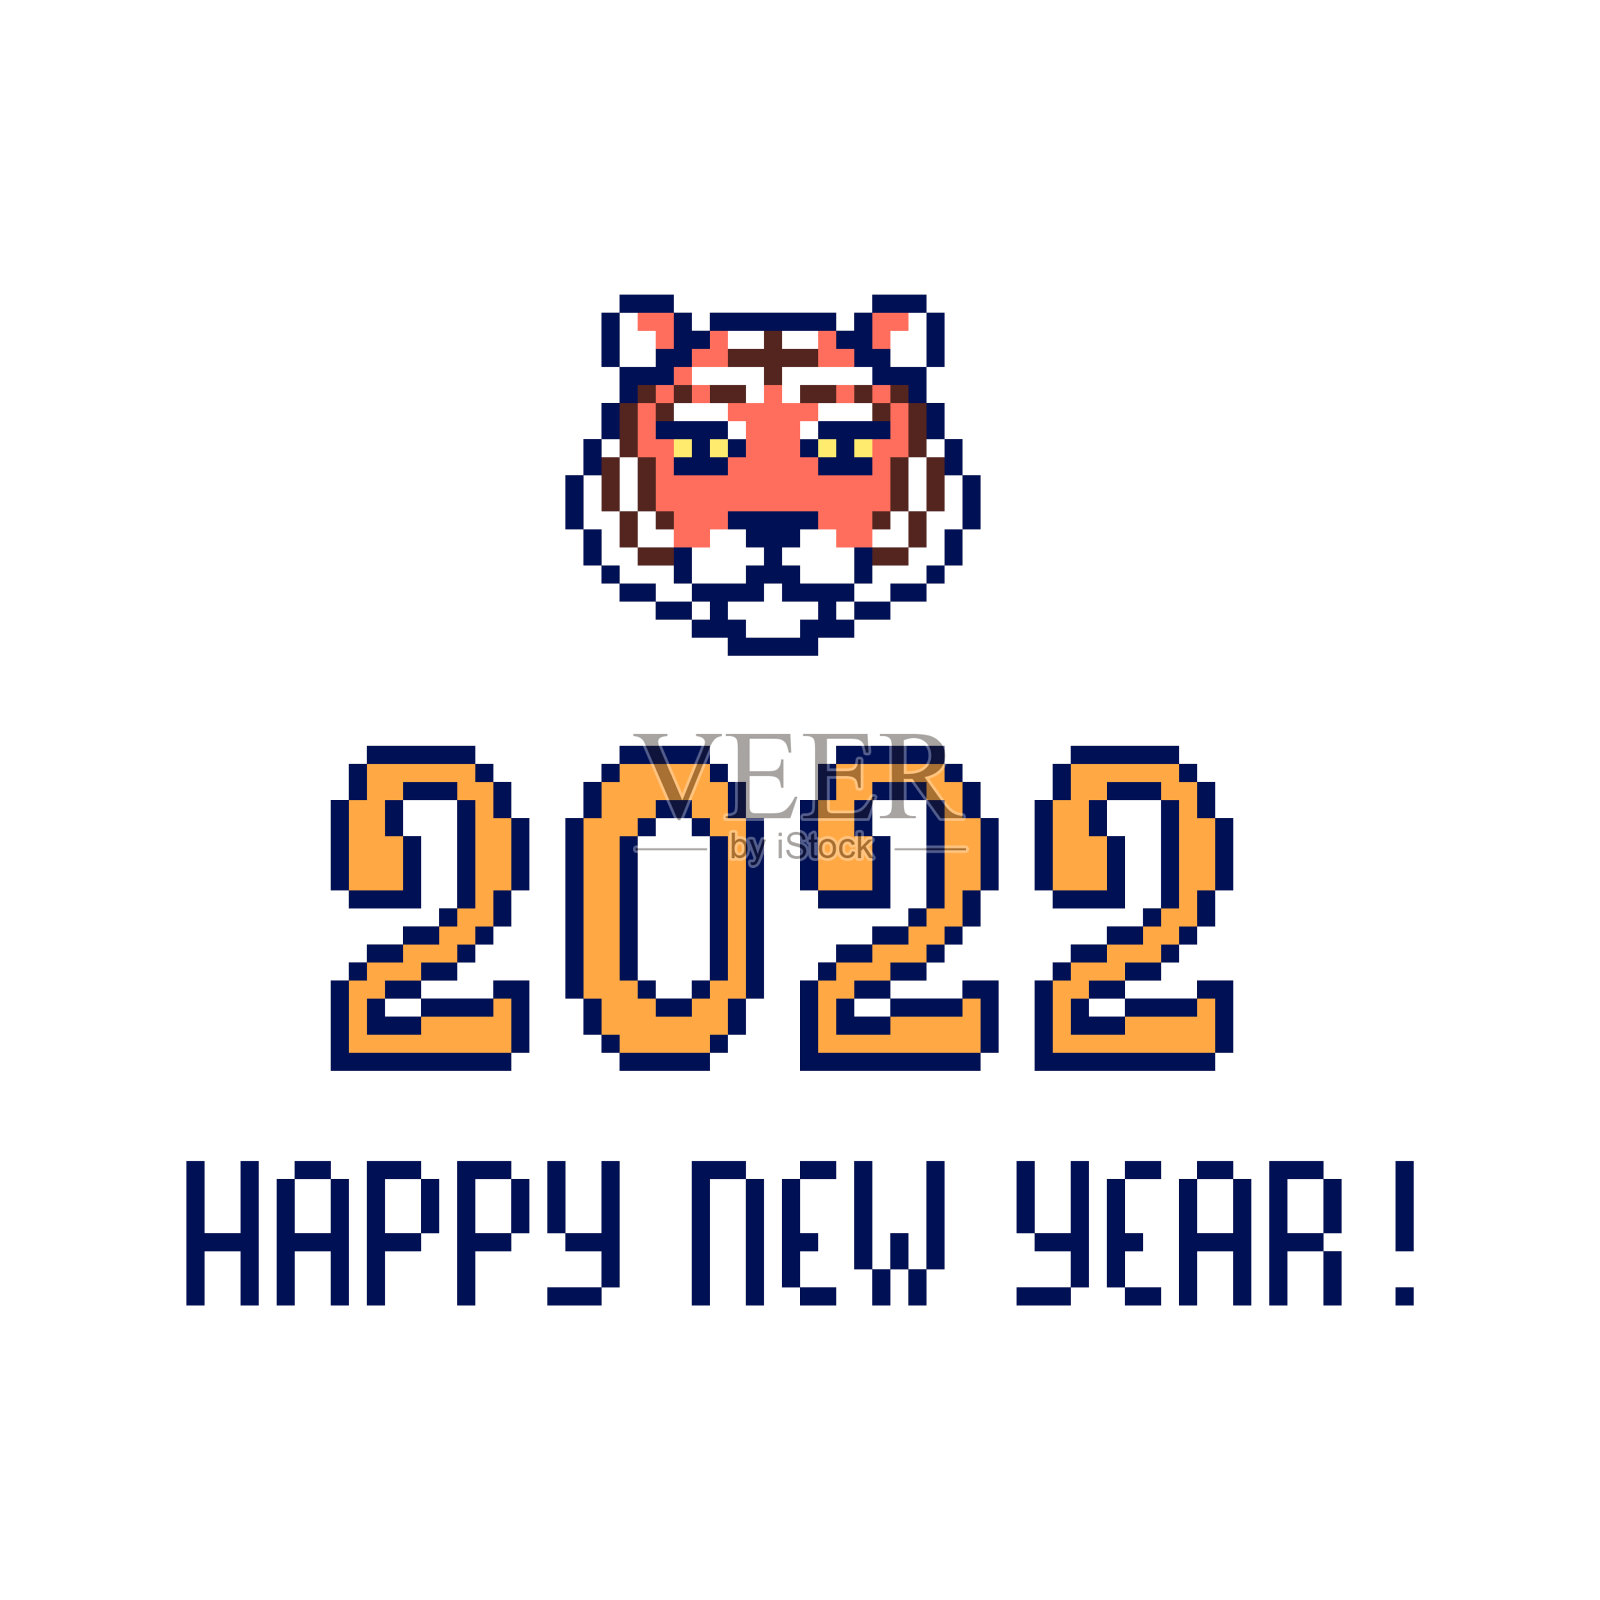 2022年新年快乐，虎头孤立在白色背景。节日卡片。十二生肖的象征。老派复古八九十年代电脑，视频游戏图形。槽机设计元件设计元素图片